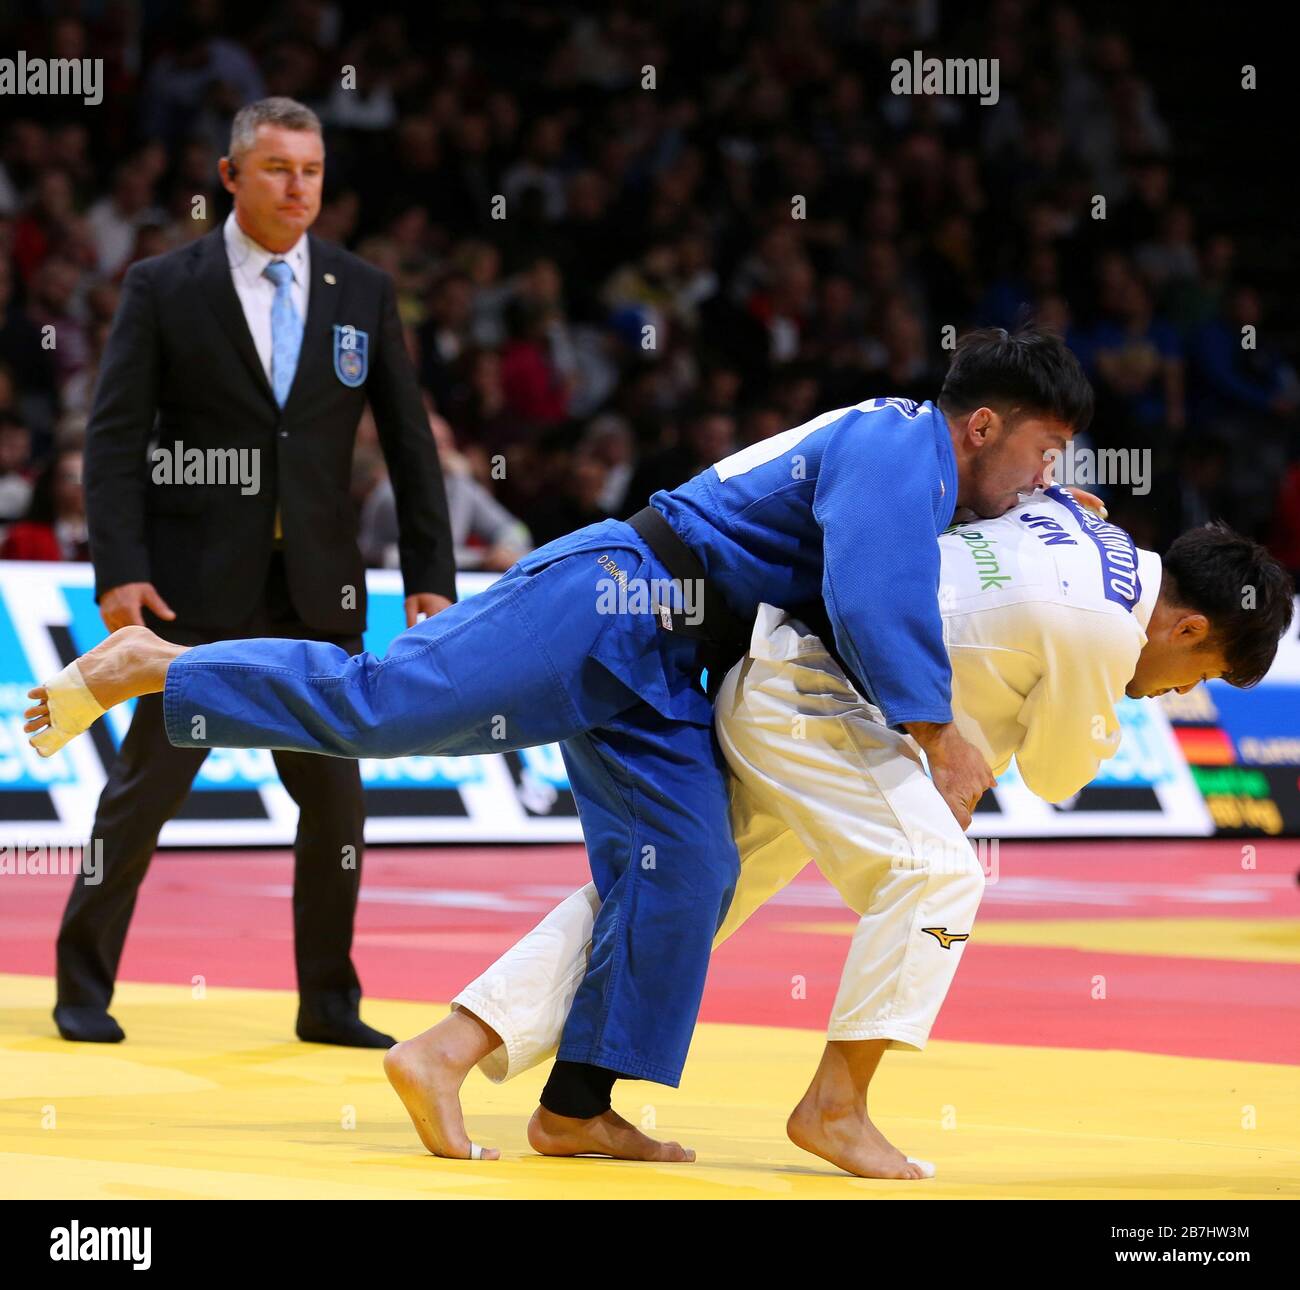 Paris, France - 08 février 2020: Soichi Hashimoto pour le Japon contre Odbayar Ganbaatar pour la Mongolie, hommes -73 kg, Round 3 (crédit: Mickael Chavet) Banque D'Images